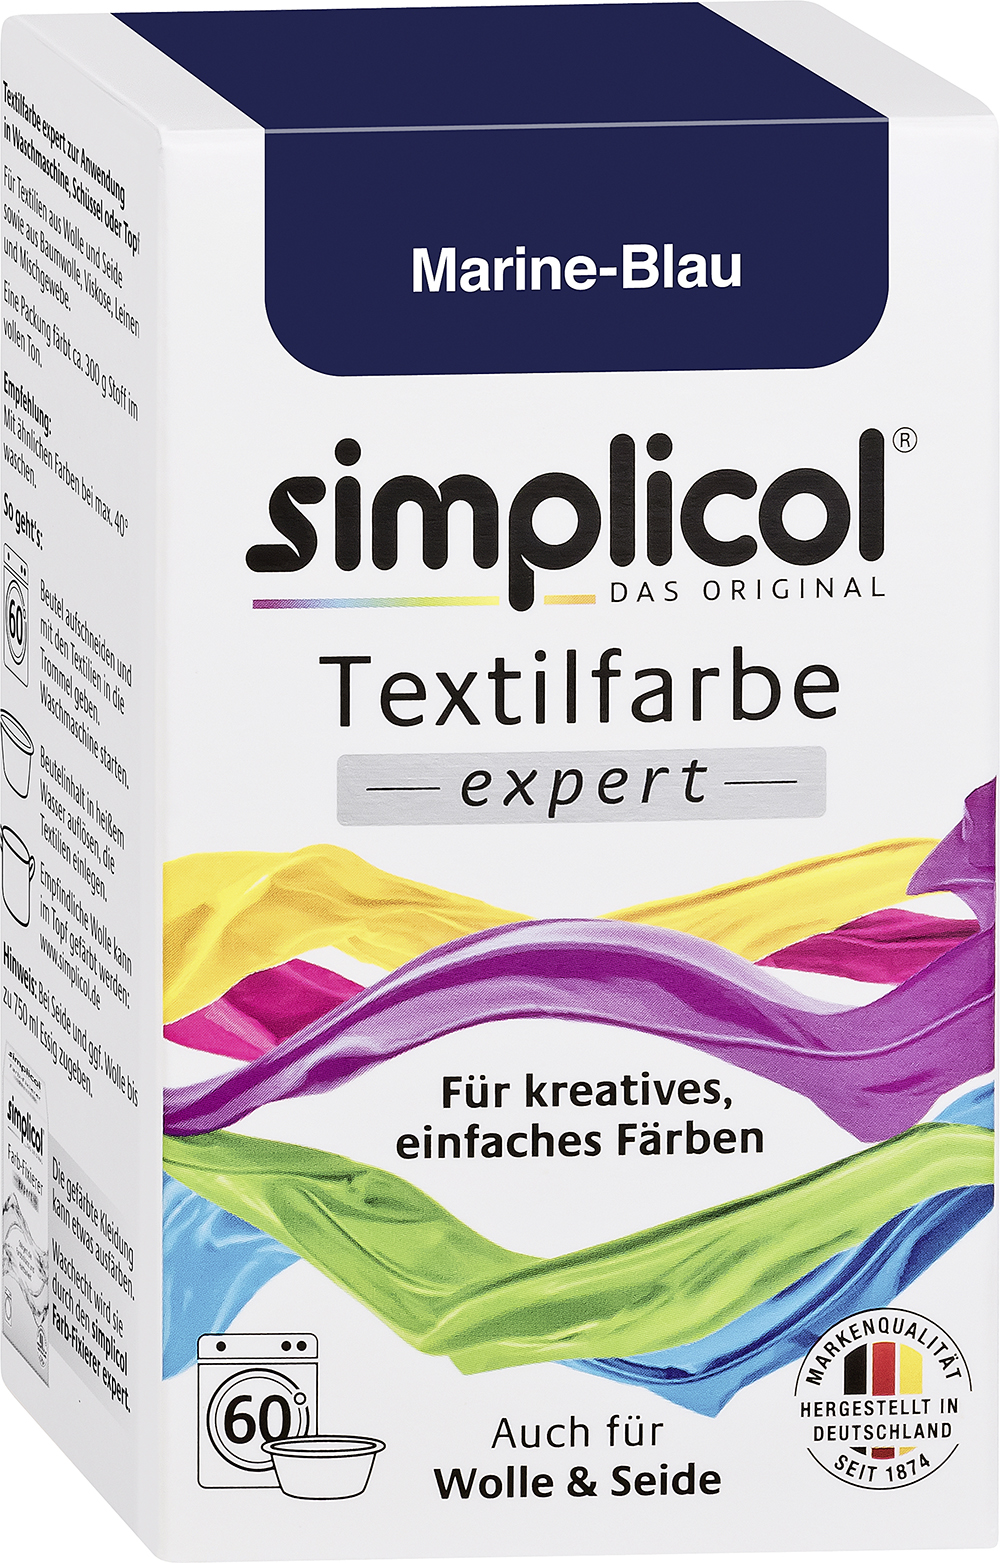 SIMPLICOL Textilfarbe Expert 150g marineblau